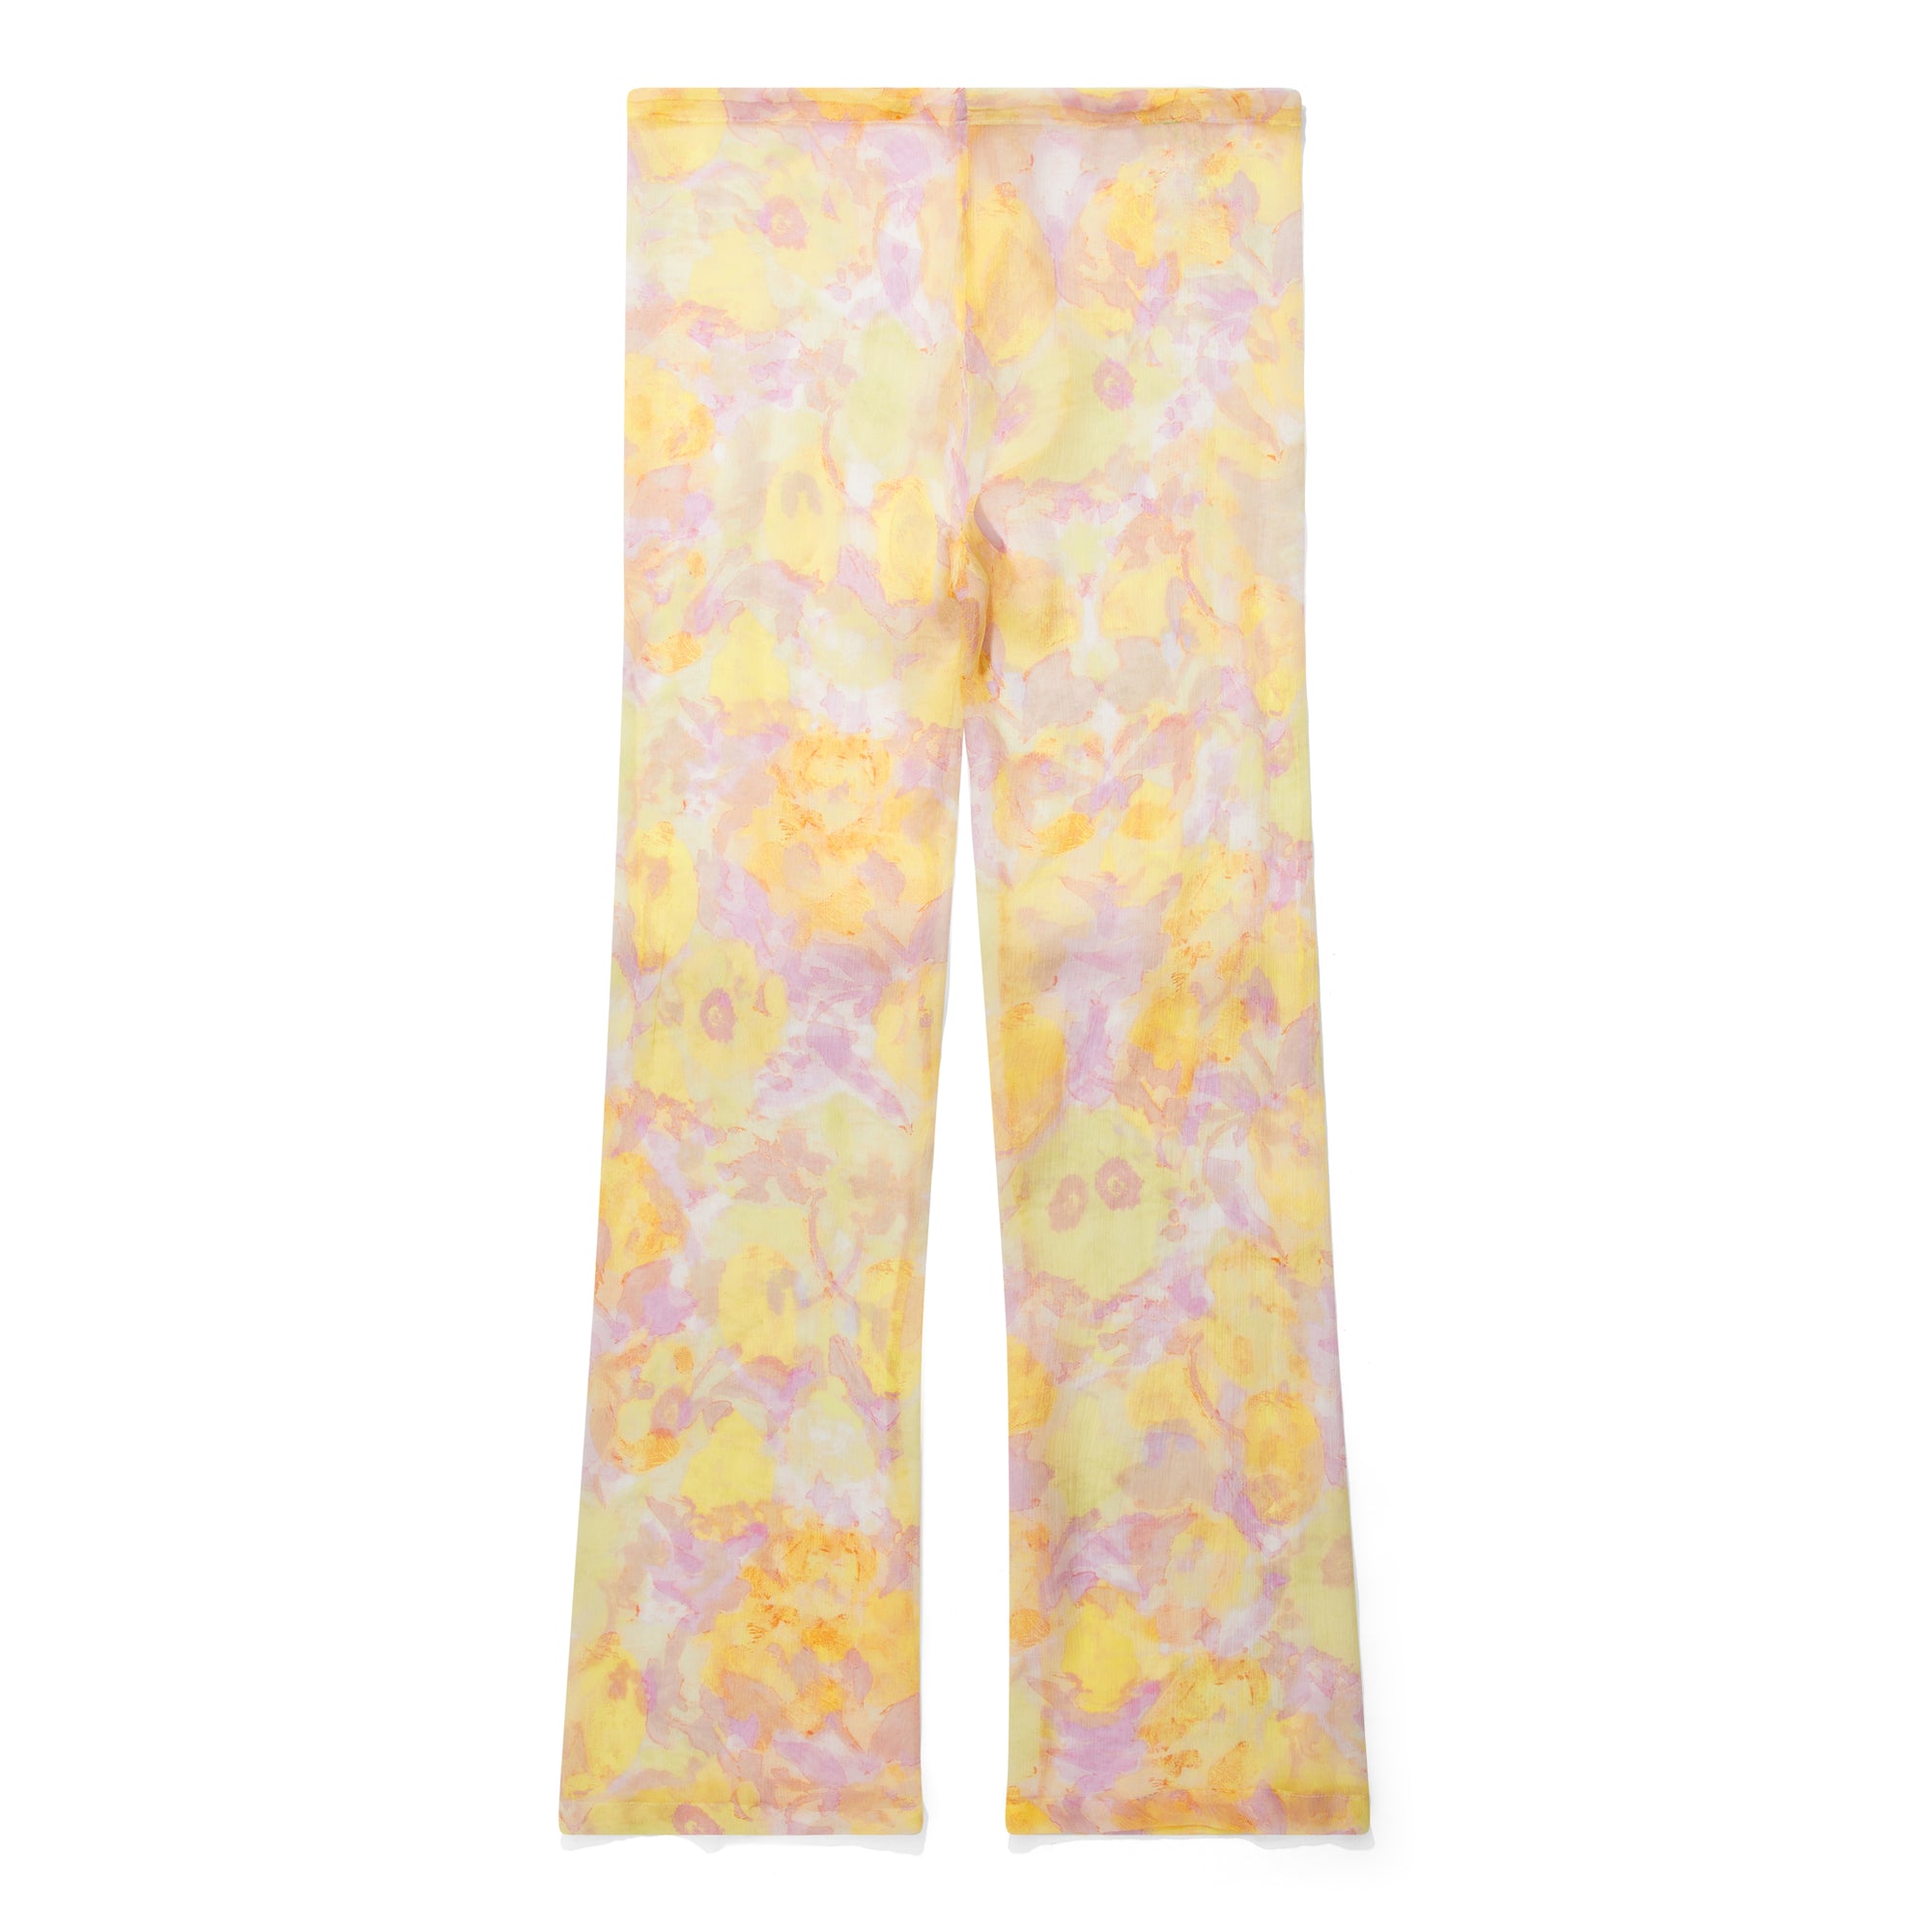 Dries Van Noten - Women’s Floral Print Pants - (Orange/Yellow) view 2